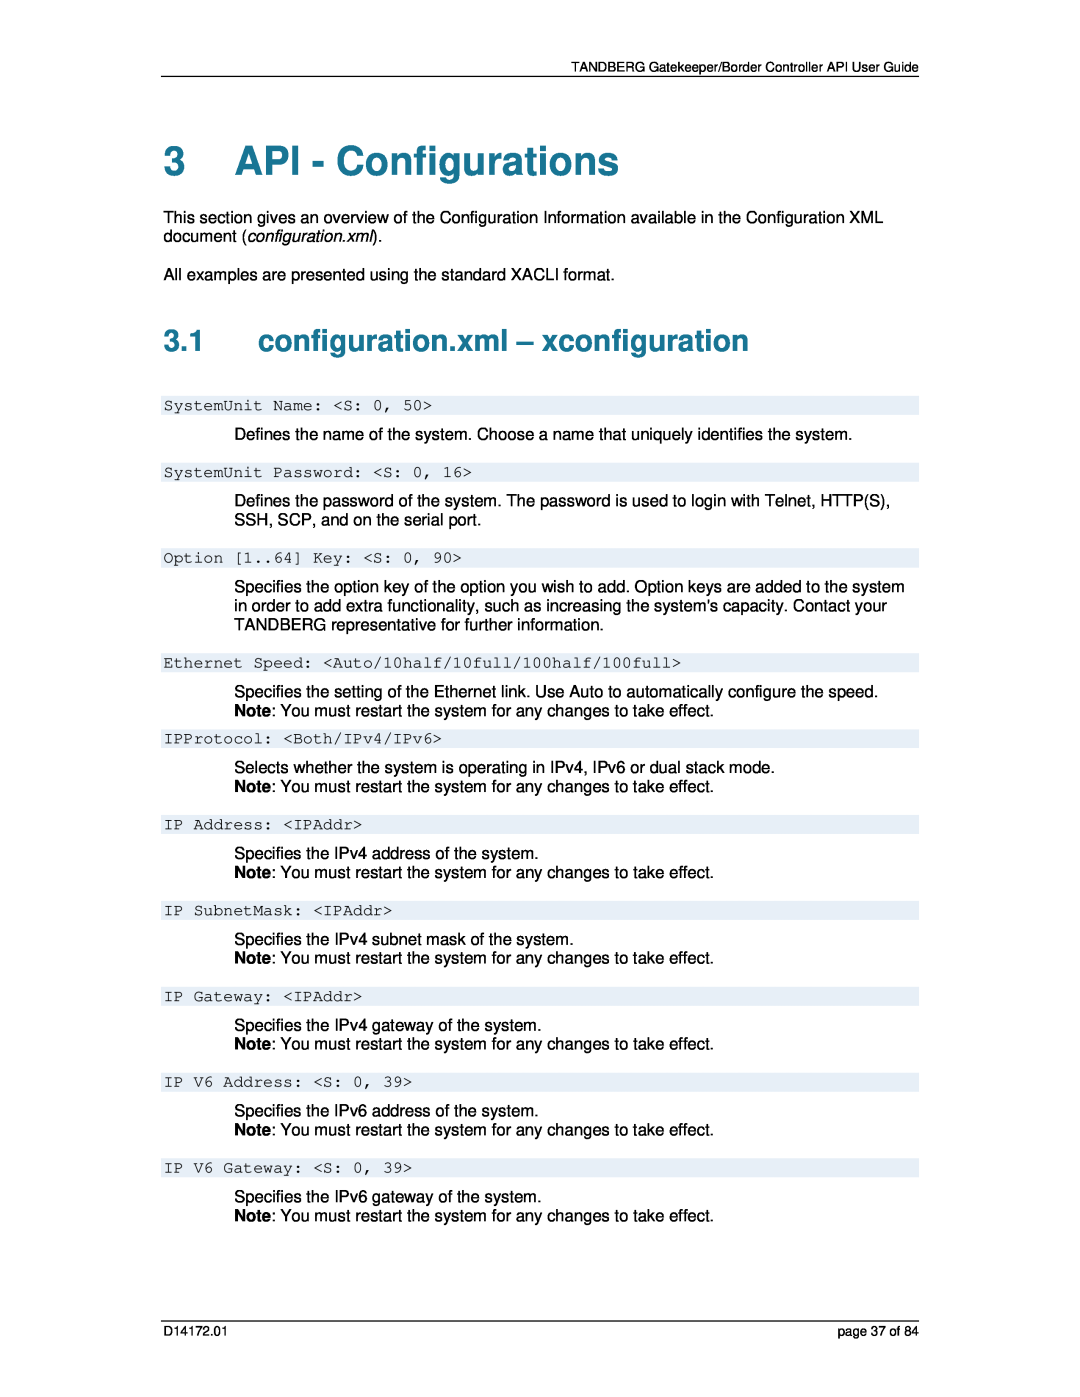 TANDBERG D14172.01 manual API - Configurations, configuration.xml - xconfiguration 